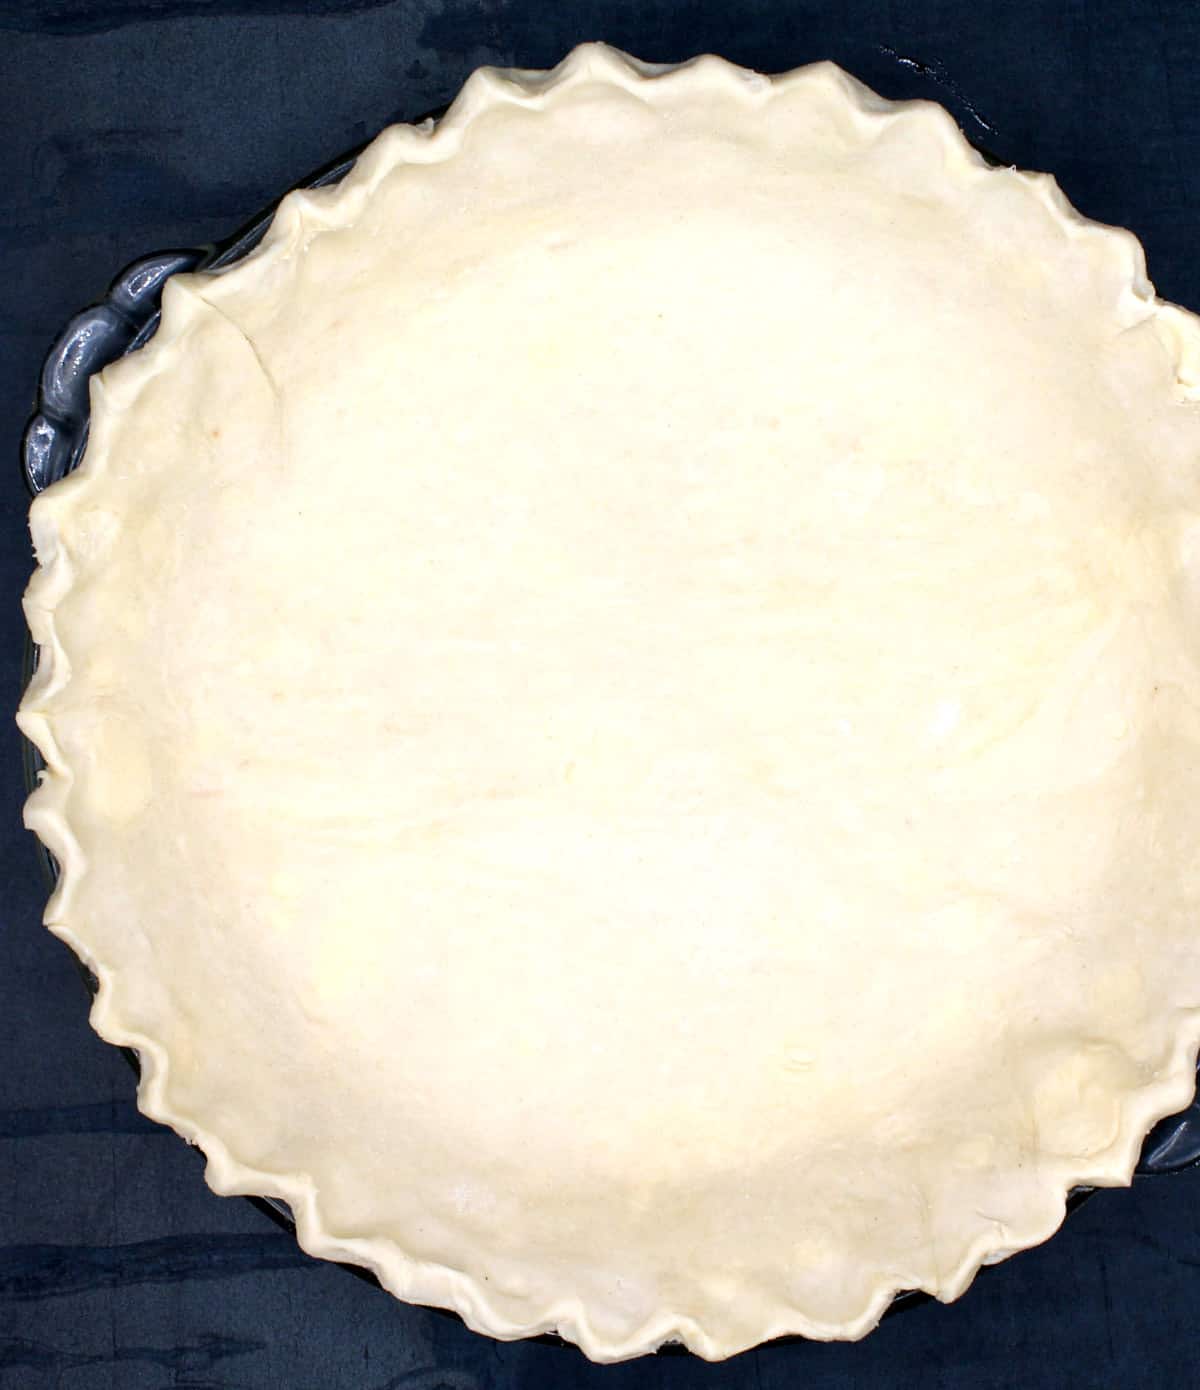 Fluted pie crust in glass pie plate on dark background.